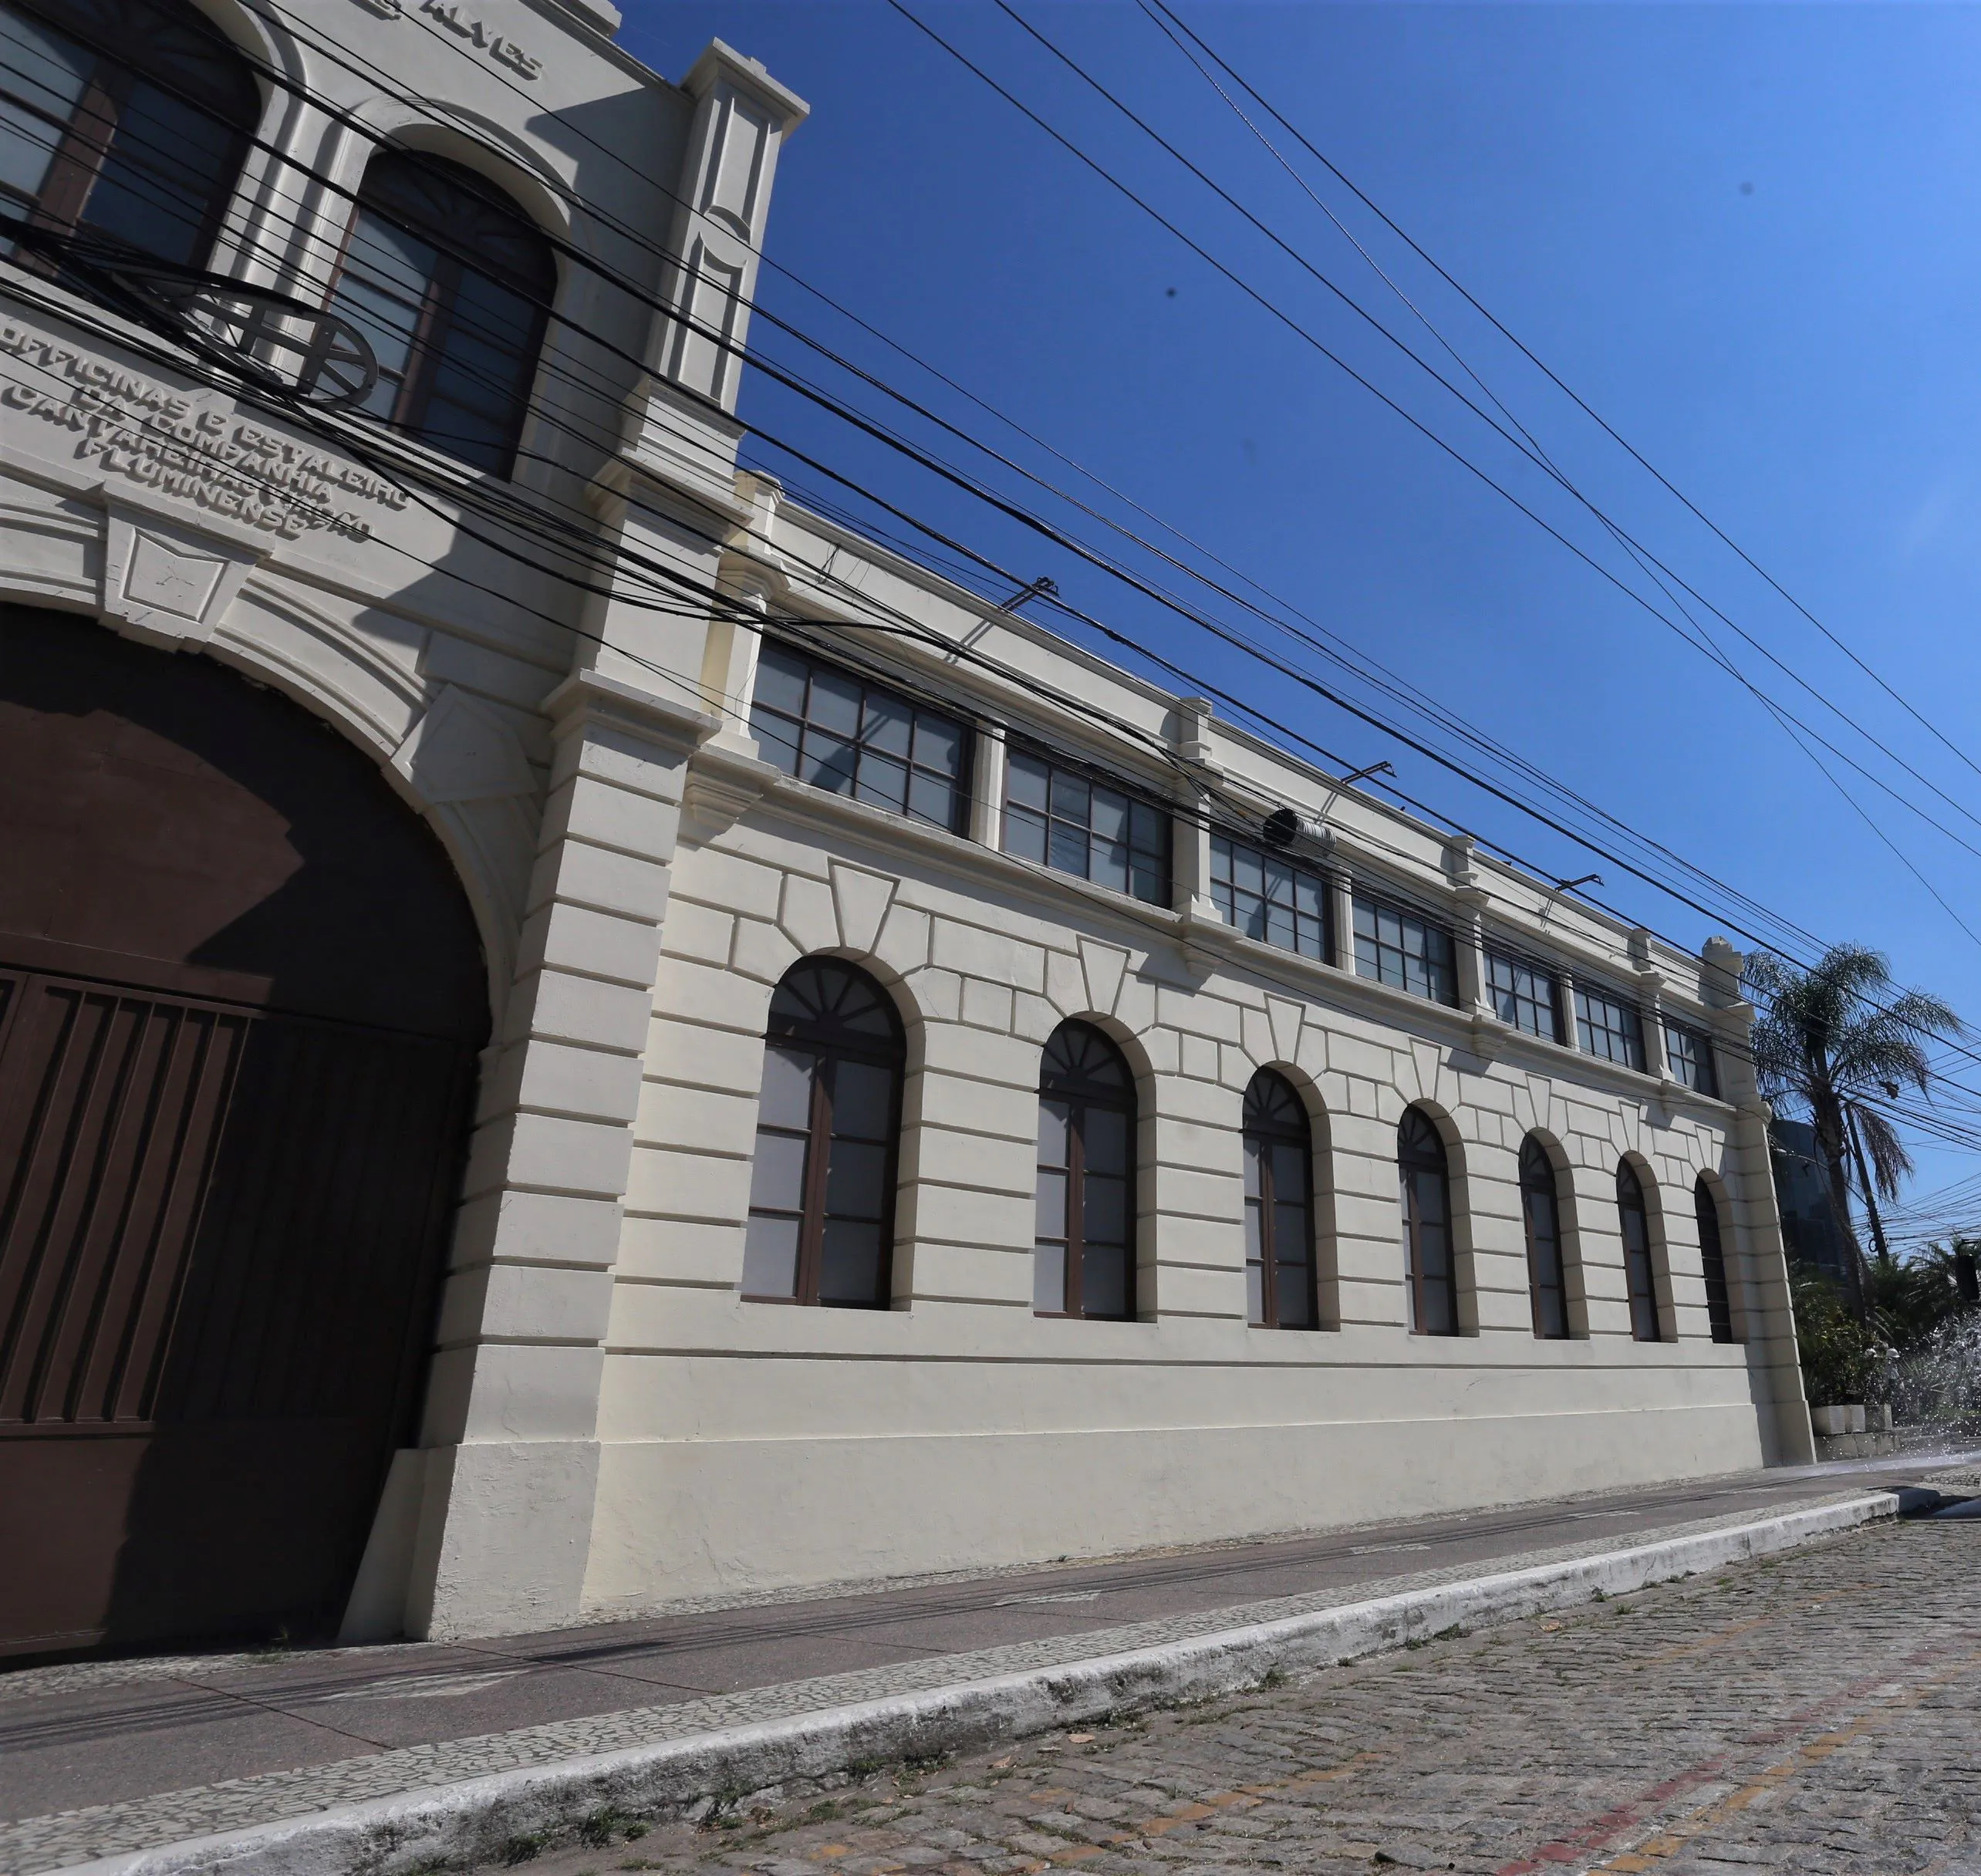 Estação faz parte do conjunto arquitetônico e histórico do bairro de São Domingos